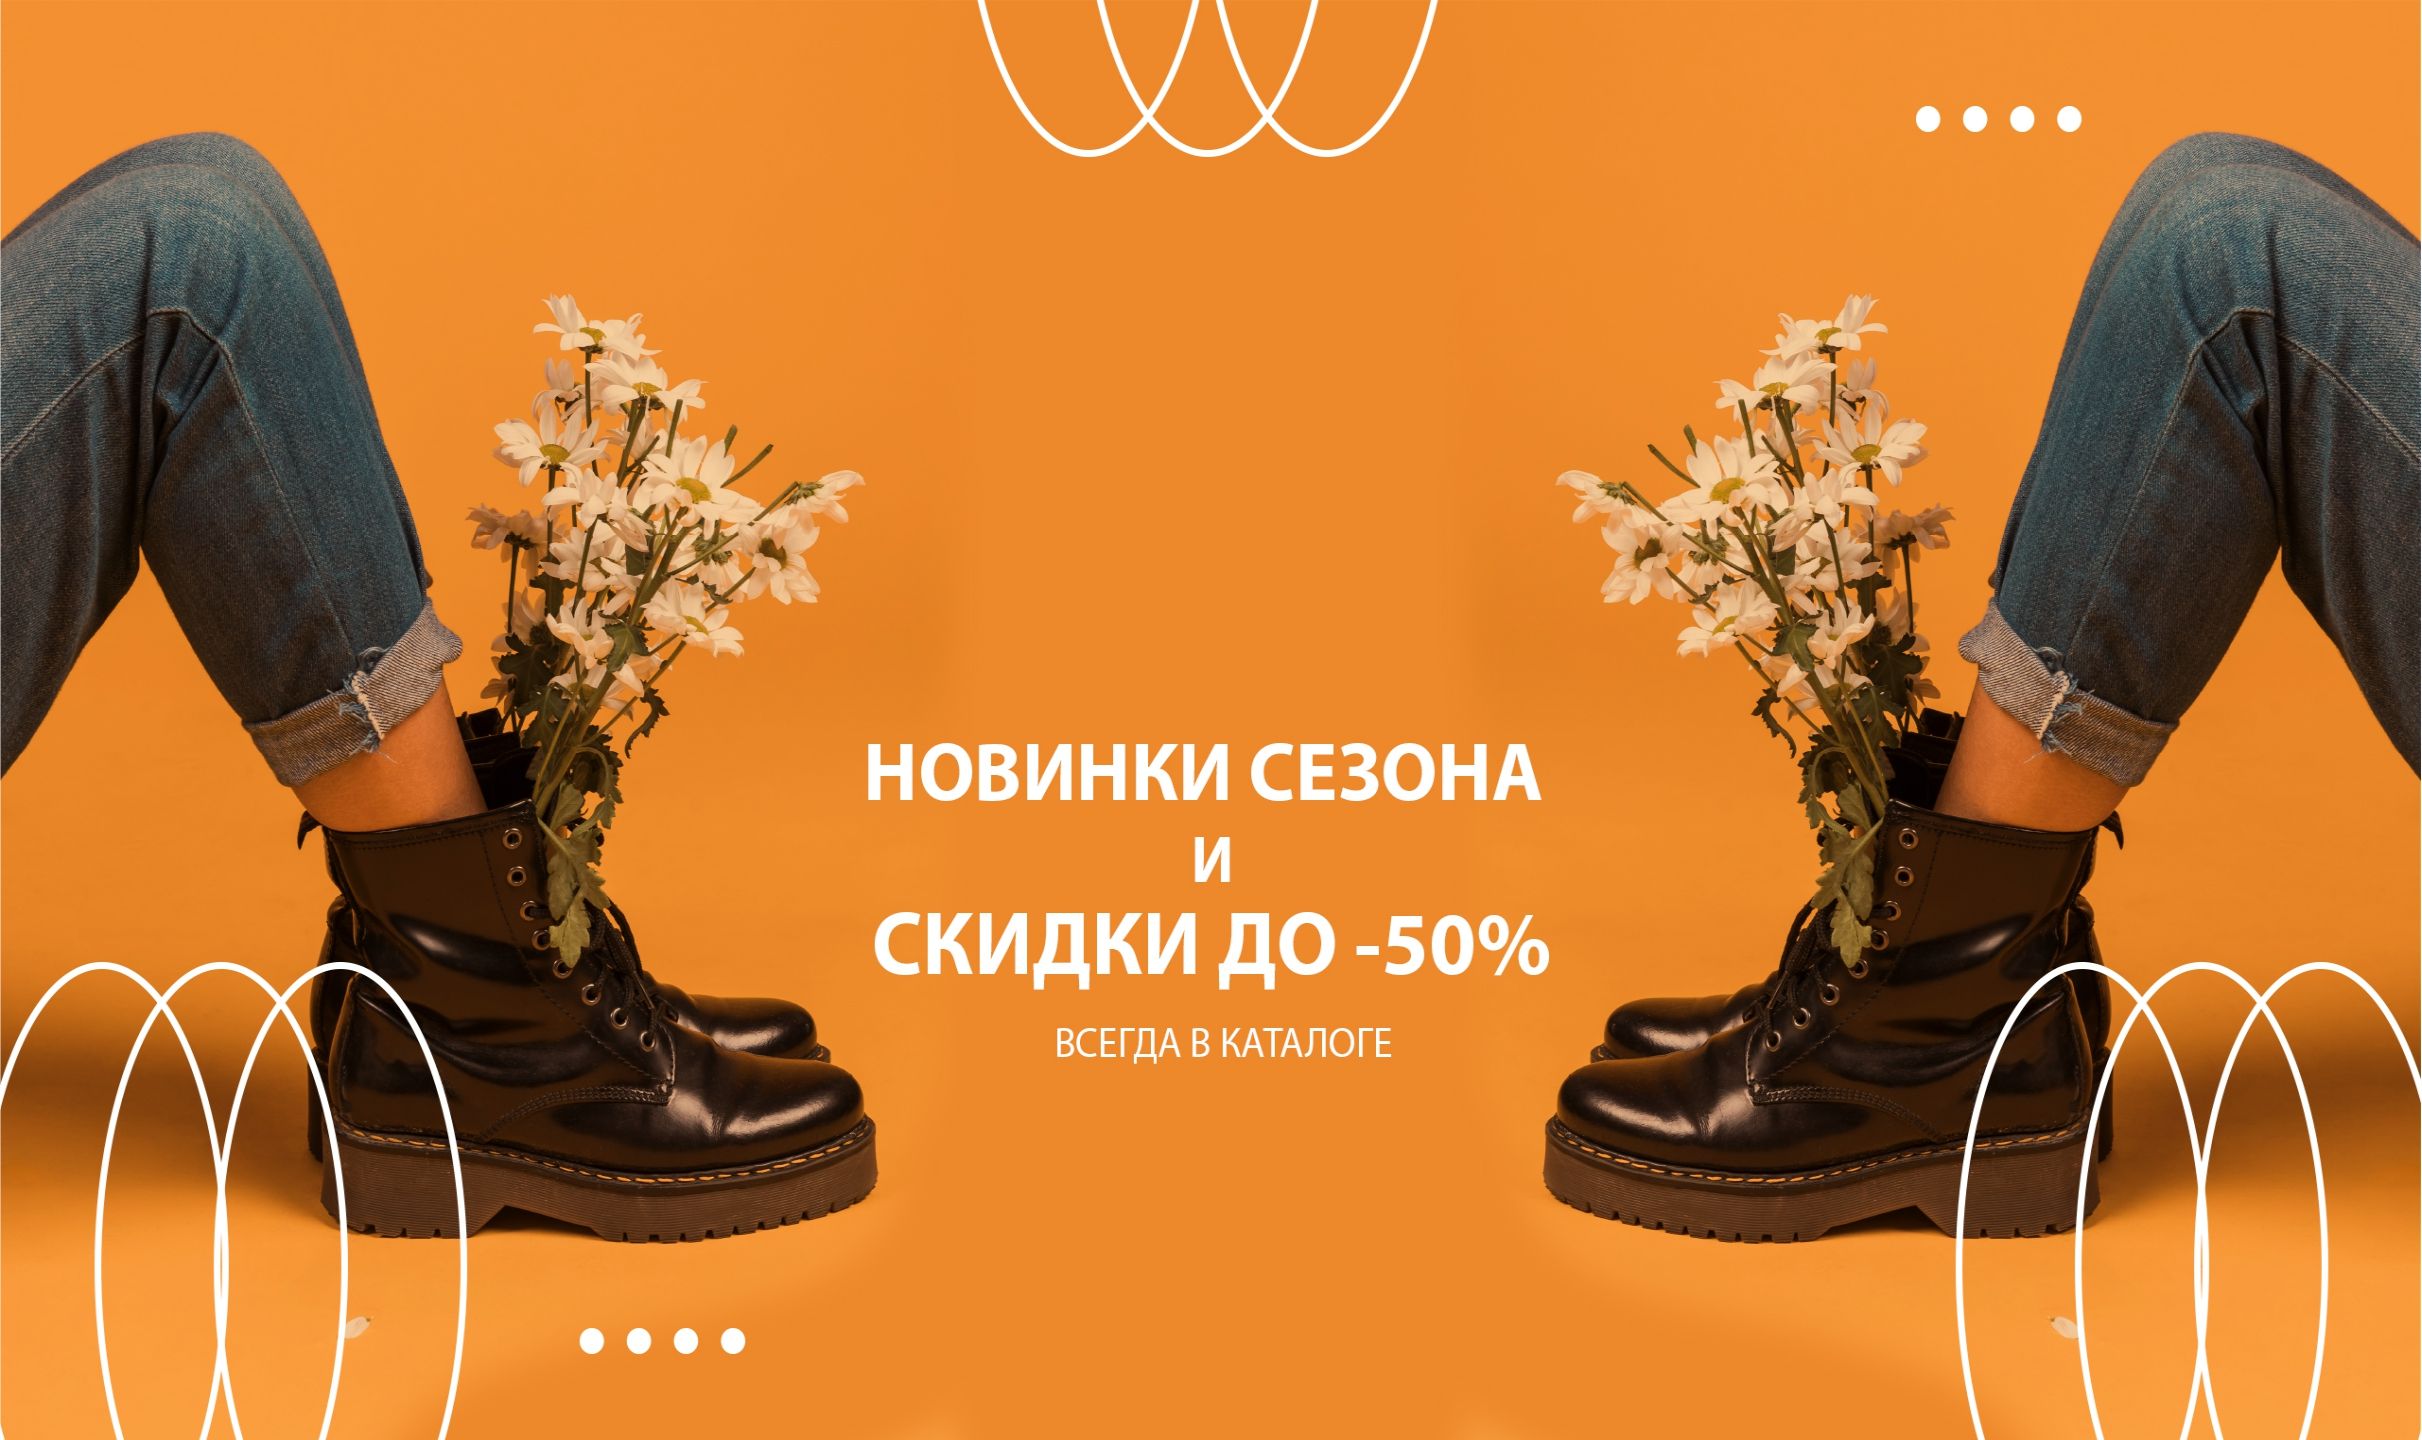 Обувной интернет-магазин Shoes.ru и сеть магазинов 